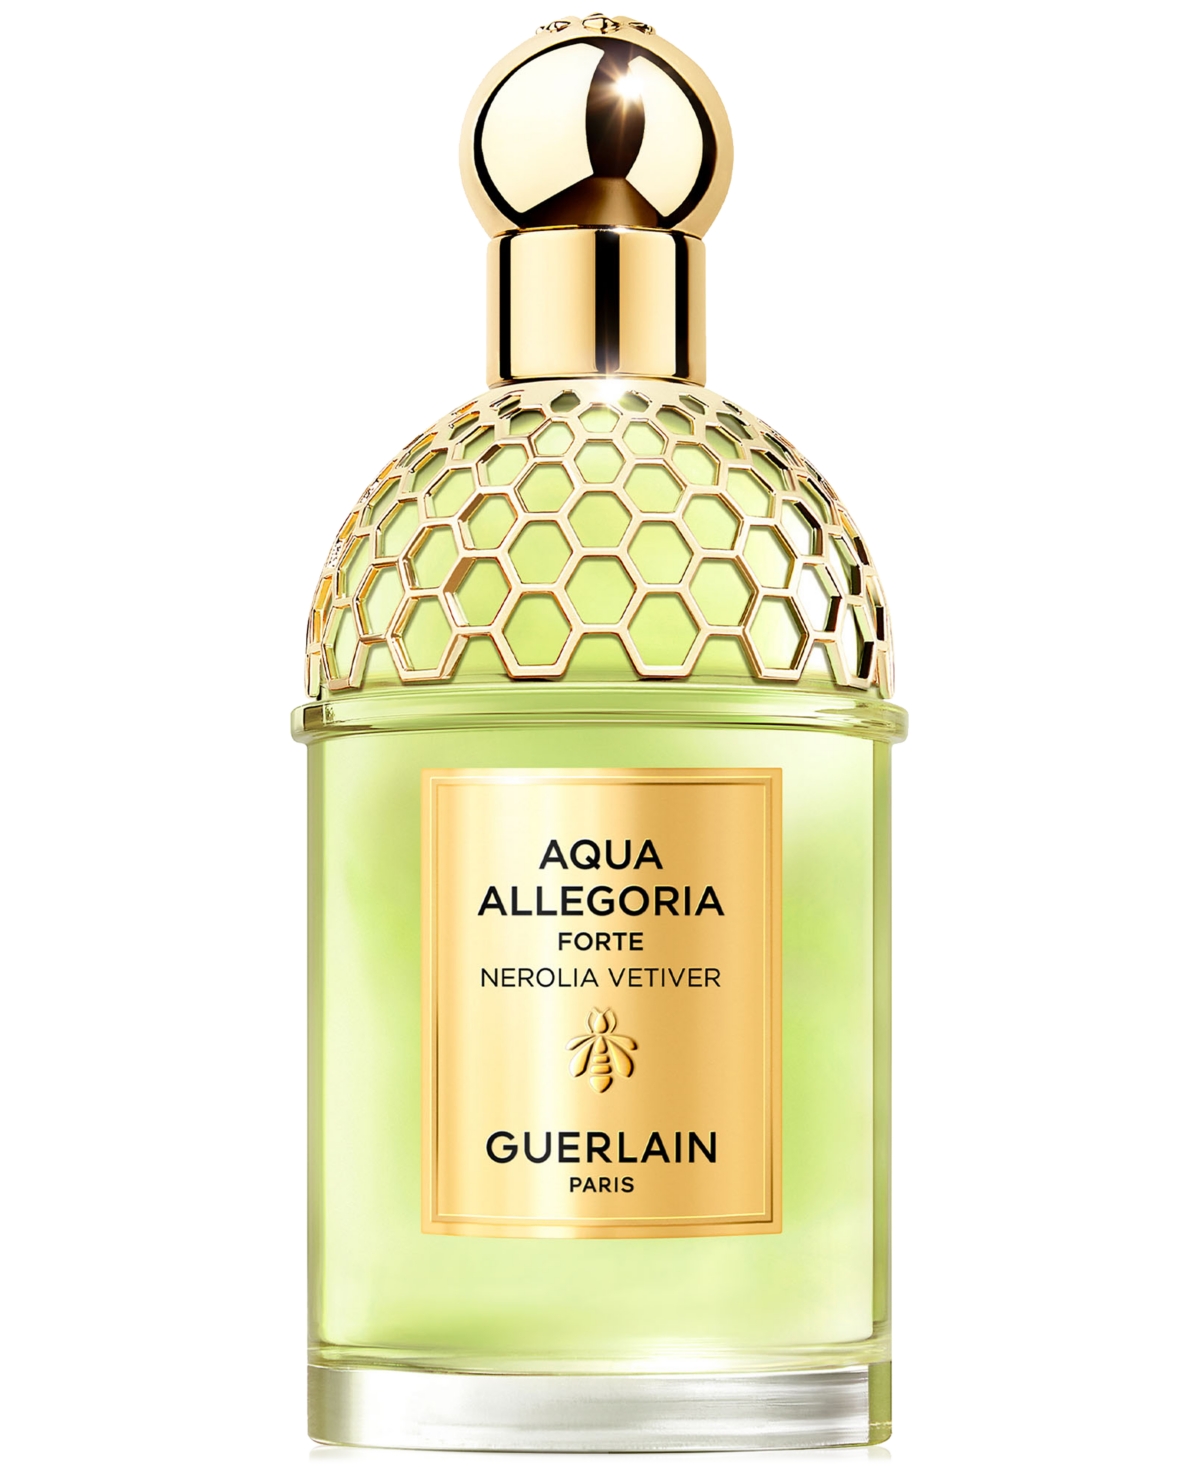 Guerlain Aqua Allegoria Forte Nerolia Vetiver Eau De Parfum, 4.2 Oz.